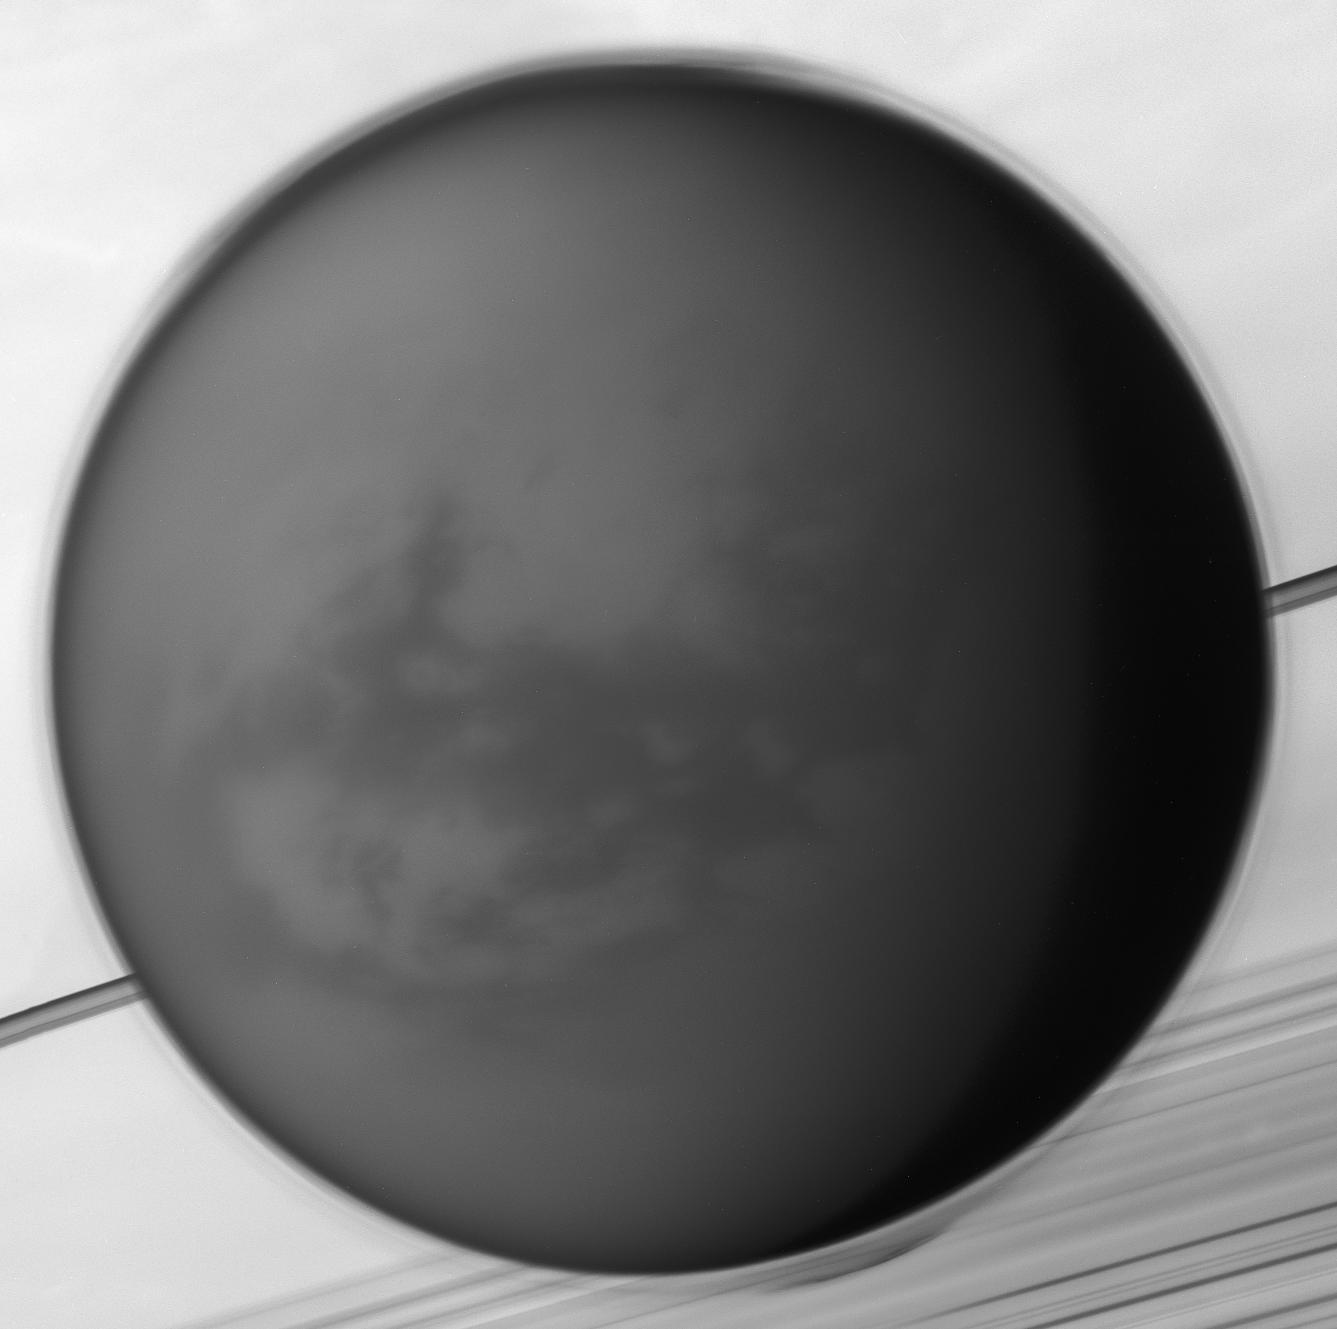 土卫六:土星的卫星